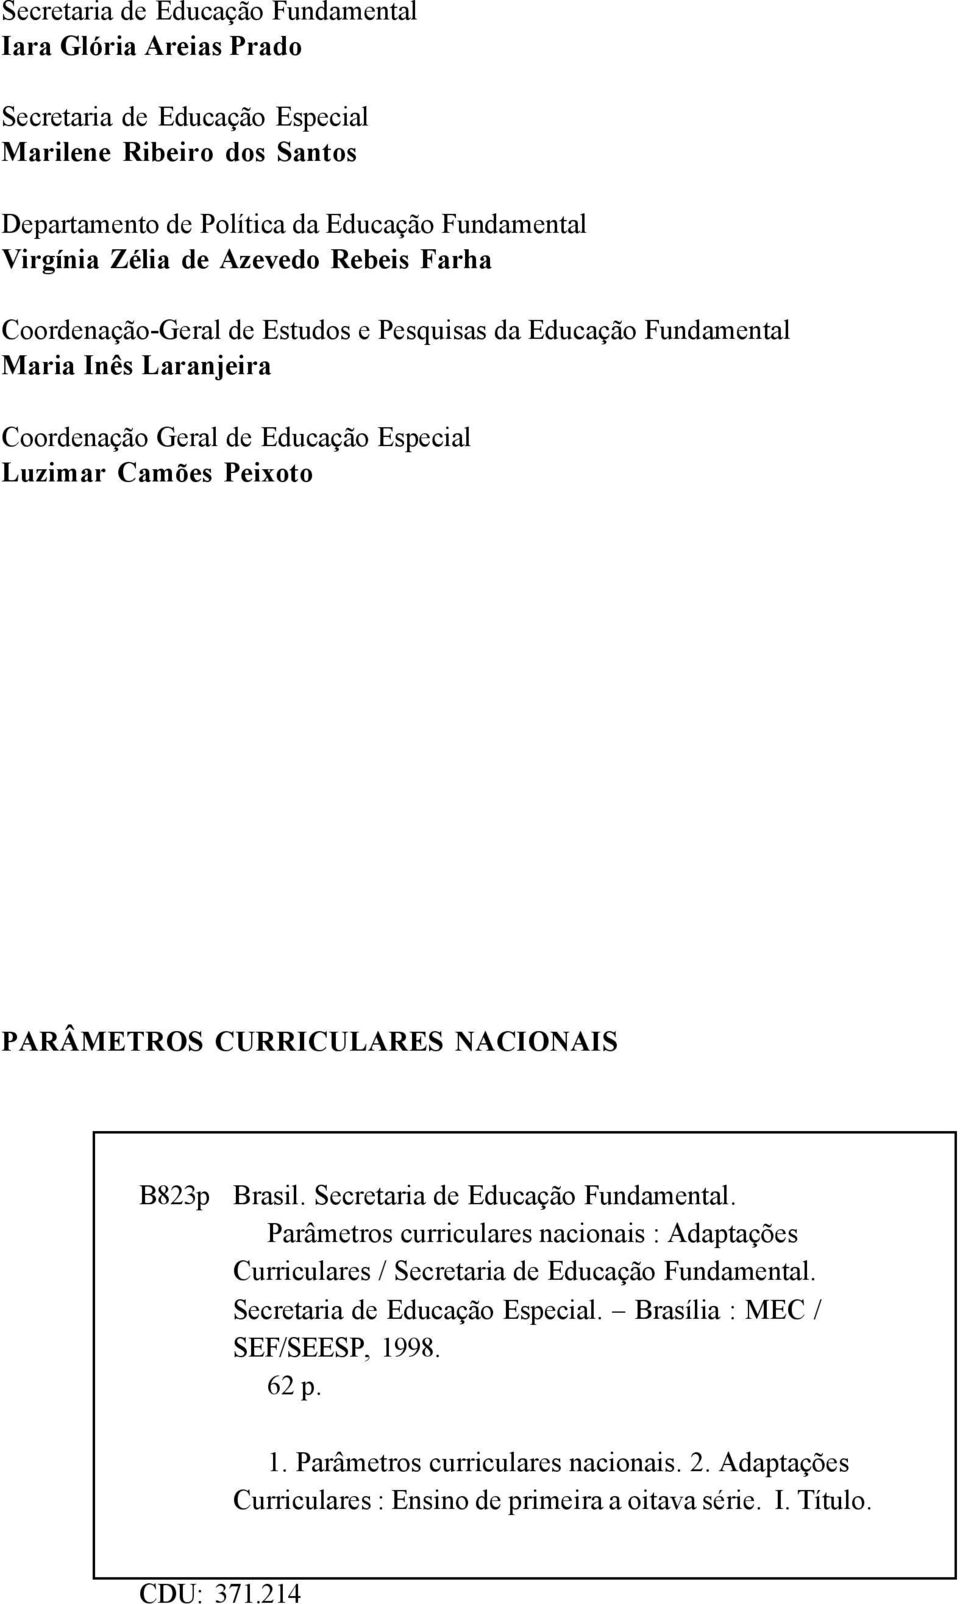 CURRICULARES NACIONAIS B823p Brasil. Secretaria de Educação Fundamental. Parâmetros curriculares nacionais : Adaptações Curriculares / Secretaria de Educação Fundamental.